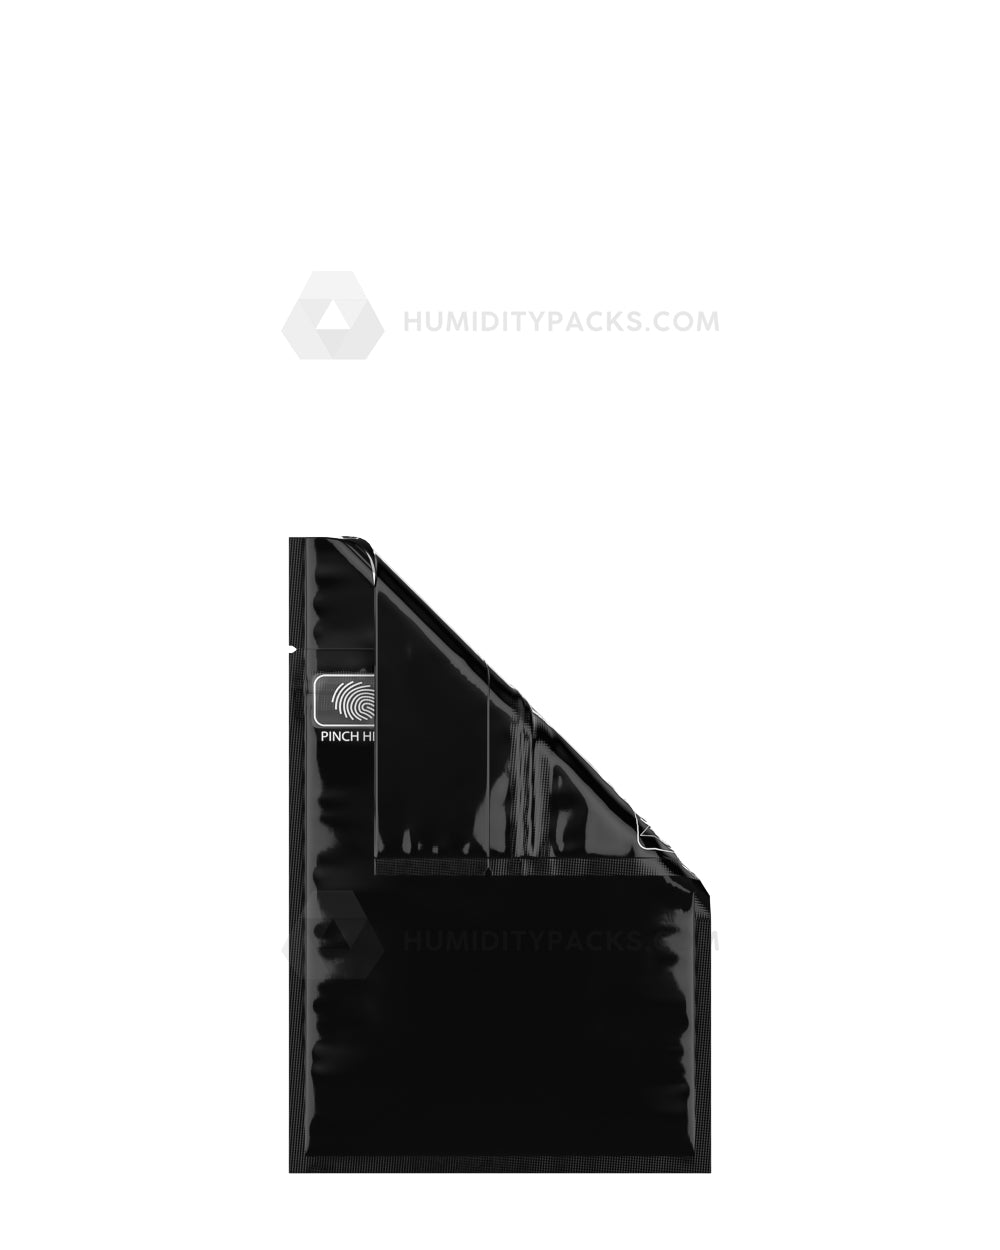 Matte-Black 3.4" x 3.7" Pinch N Slide 2.0 Mylar Child Resistant & Tamper Evident Bags (1 gram) 250/Box